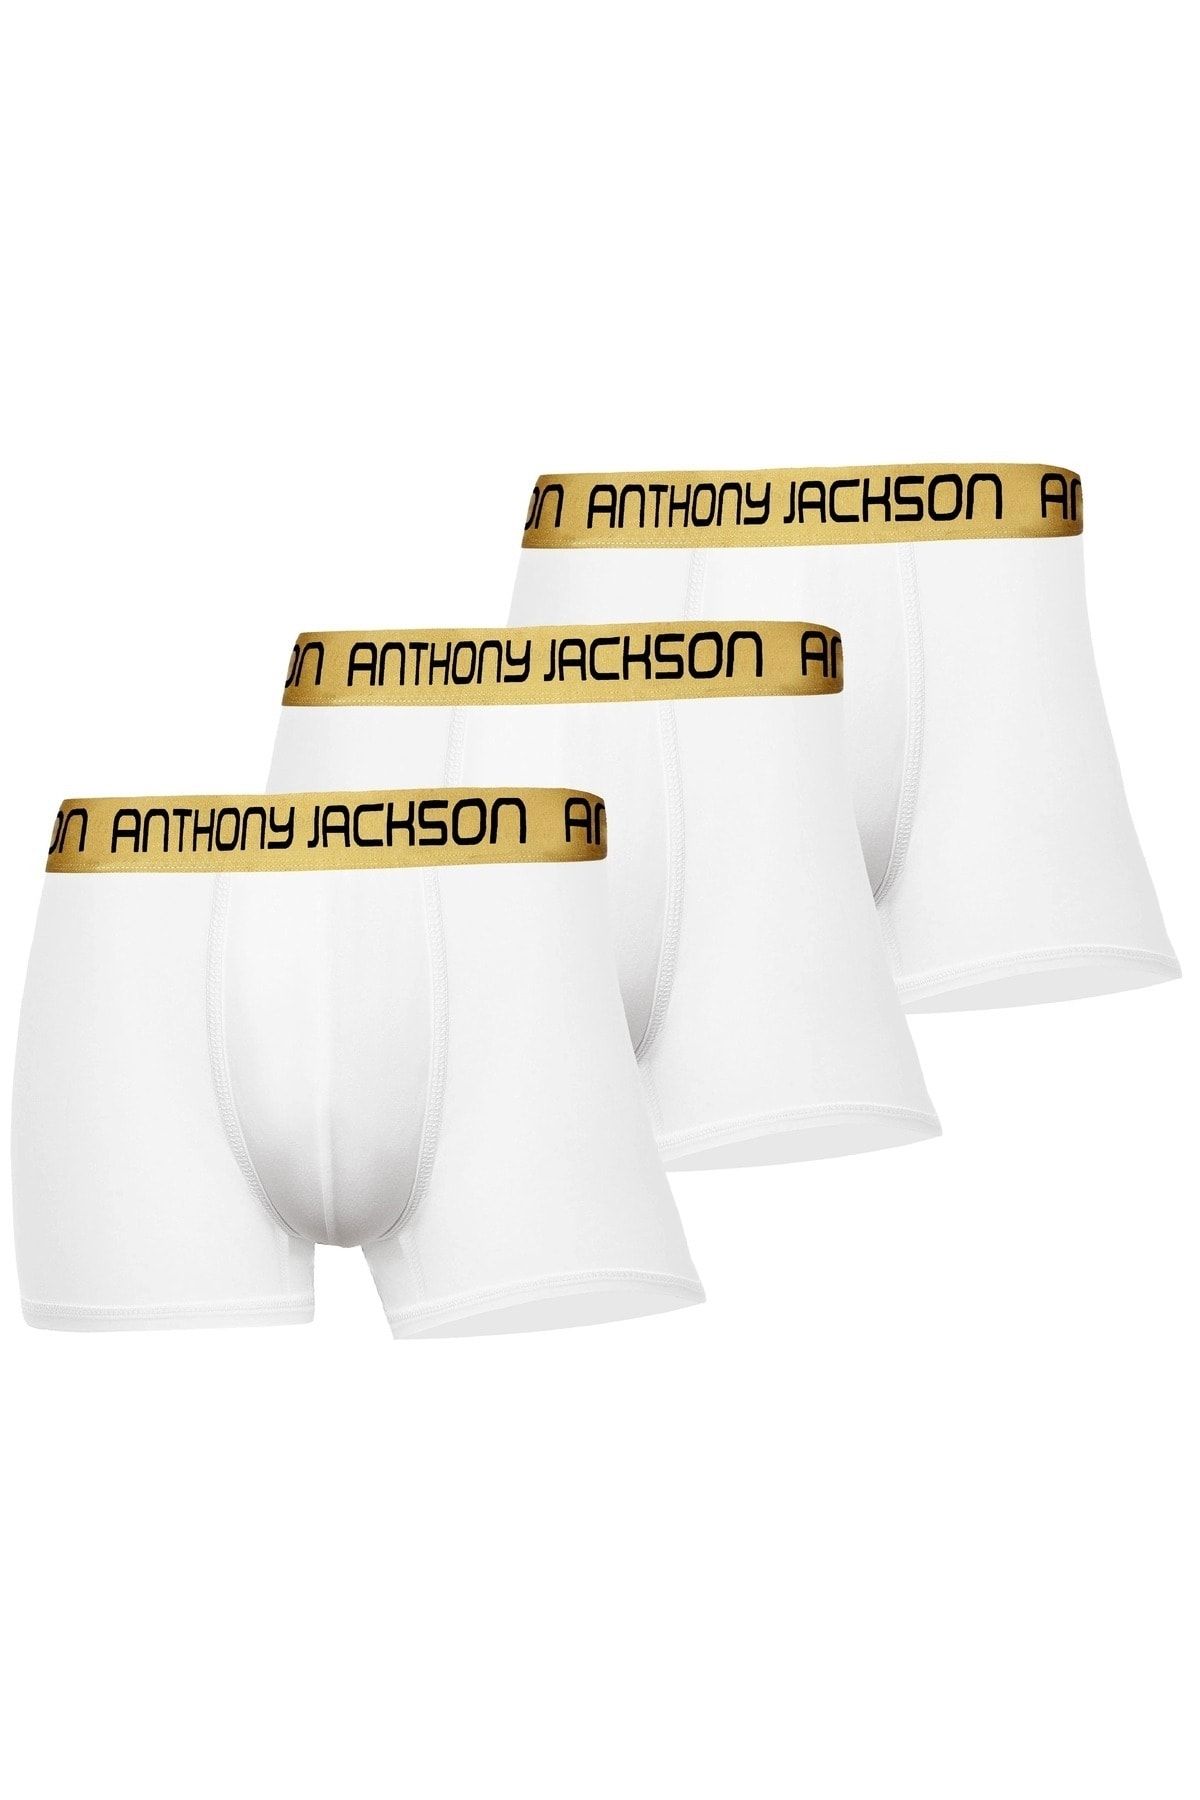 ANTHONY JACKSON Likralı 3'lü Kutu Premium Erkek Boxer Özel Kolleksiyon